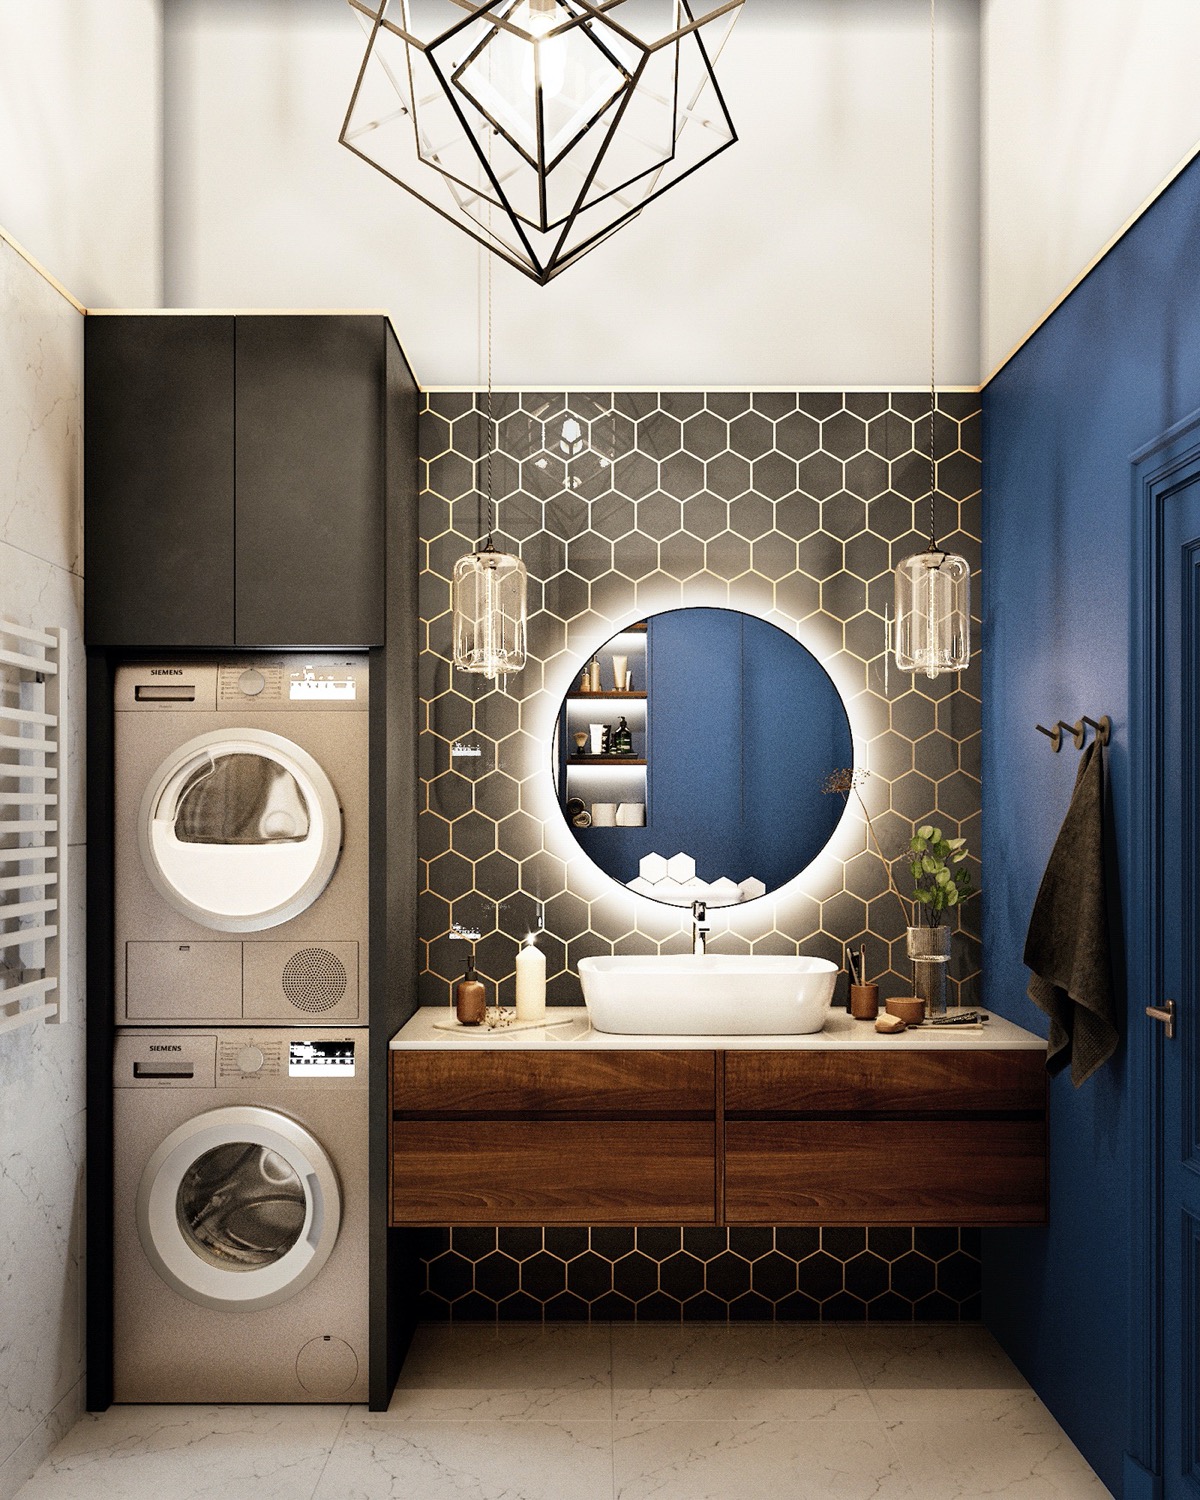 Phòng tắm thời thượng với gam màu xanh coban kết hợp với bức tường trên bồn rửa ốp gạch lục giác màu đen viền vàng, kết hợp với ánh đèn và chiếc gương tròn ở vị trí trung tâm làm tăng sự lung linh và đẹp mắt.